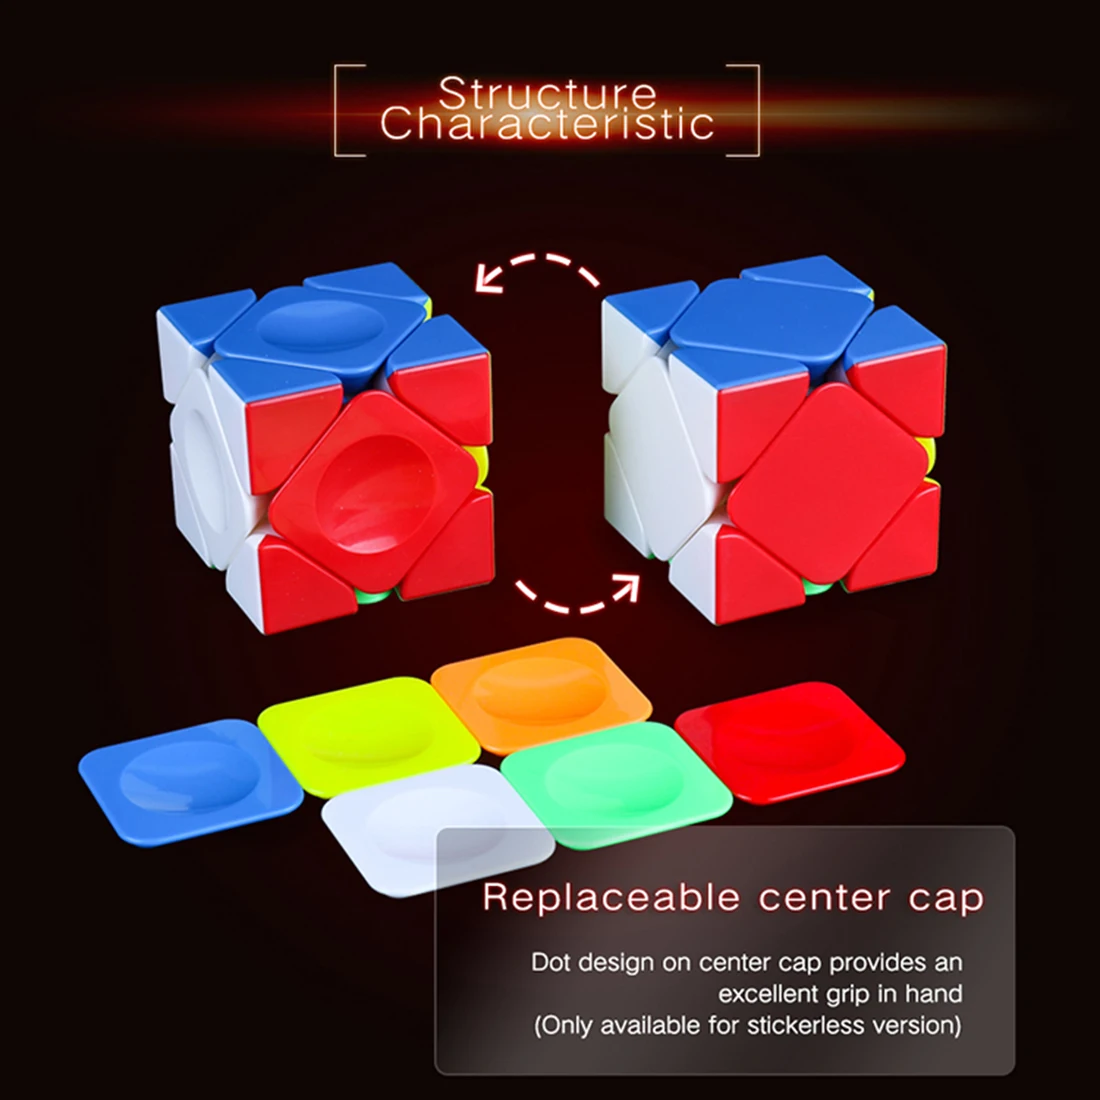 Moyu Aoyan M YJ8203 Магнитная версия Skewcube Magic Cube для детей взрослых Тренировки Мозга конкурс аксессуары